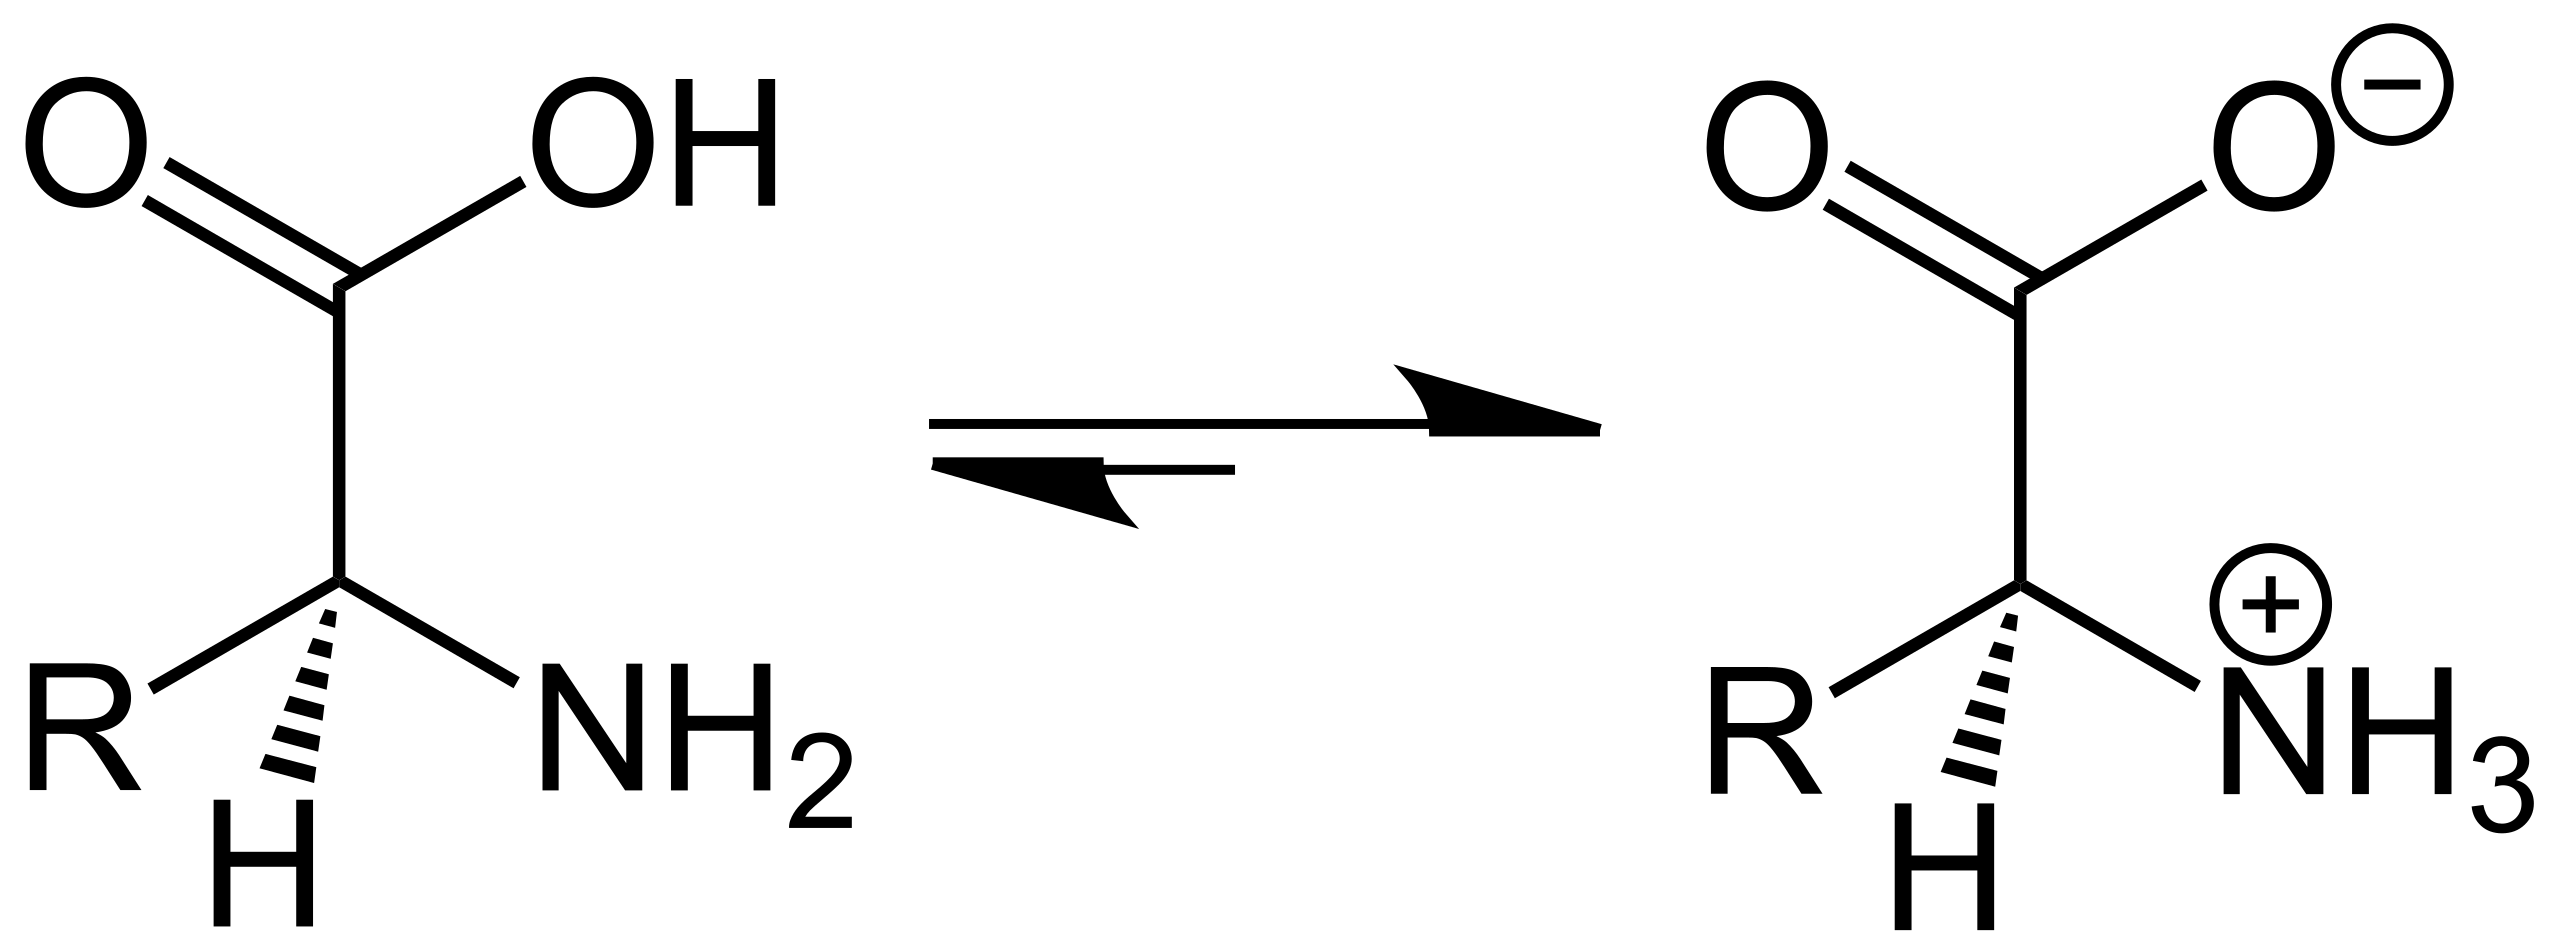 Аминокислота содержит как кислотные (фрагмент карбоновой кислоты), так и основные (фрагмент амина) центры. Изомер справа — цвиттер-ион